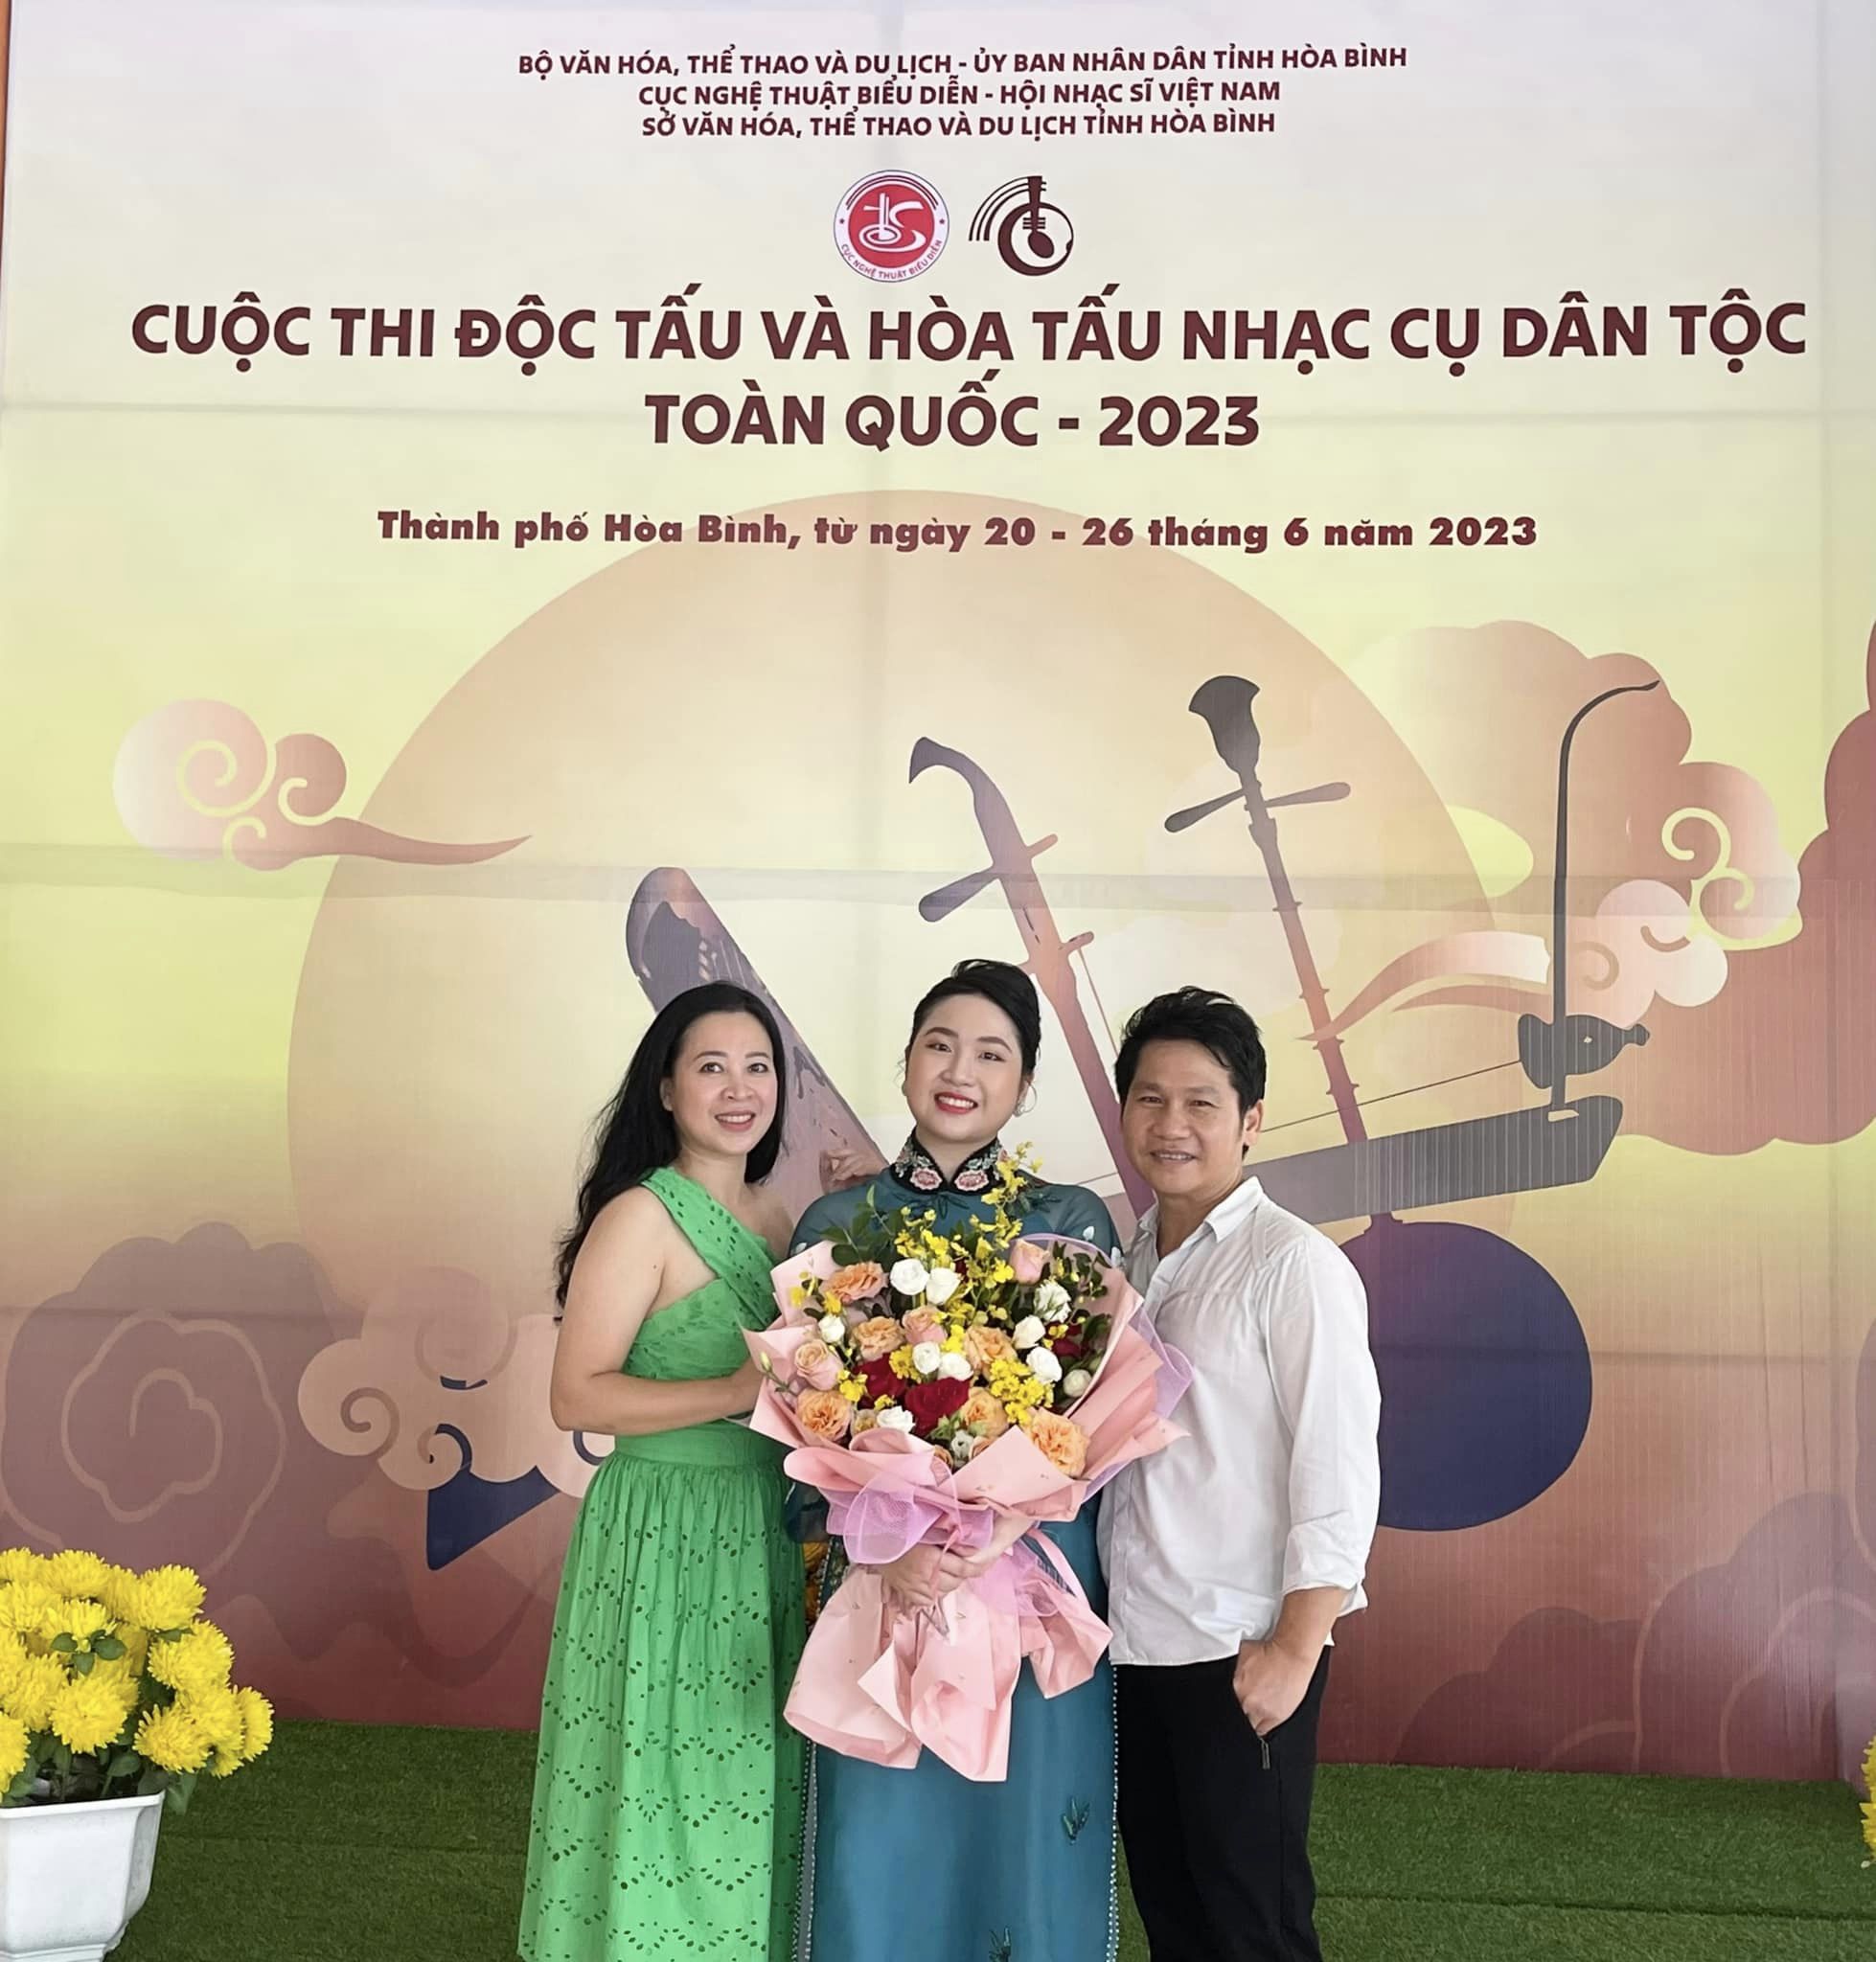 Con gái 16 tuổi của ca sĩ Trọng Tấn đạt giải Nhì Độc tấu và Hòa tấu nhạc cụ dân tộc toàn quốc 2023 - Ảnh 1.